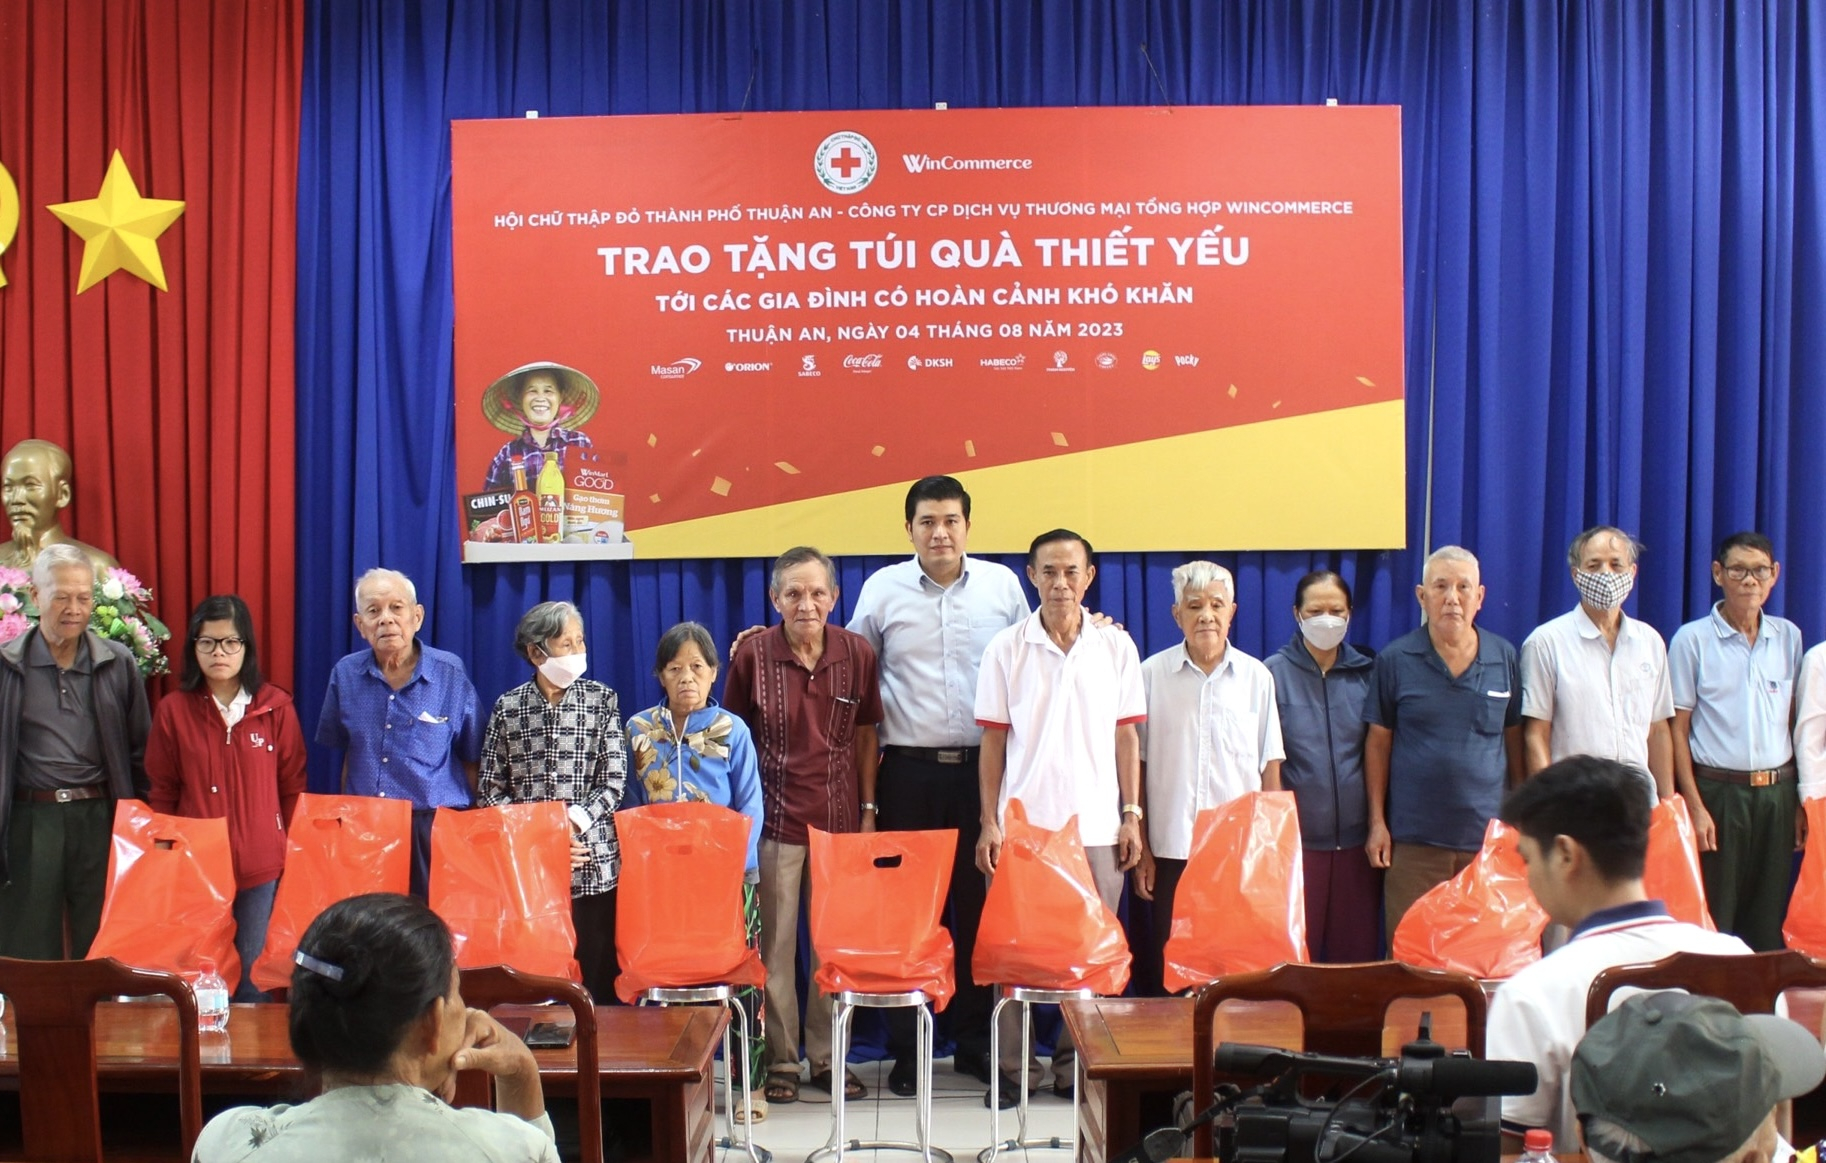 Các túi quà thiết yếu được trao tặng đến các hộ gia đình có hoàn cảnh khó khăn trên địa bàn thành phố Thuận An.